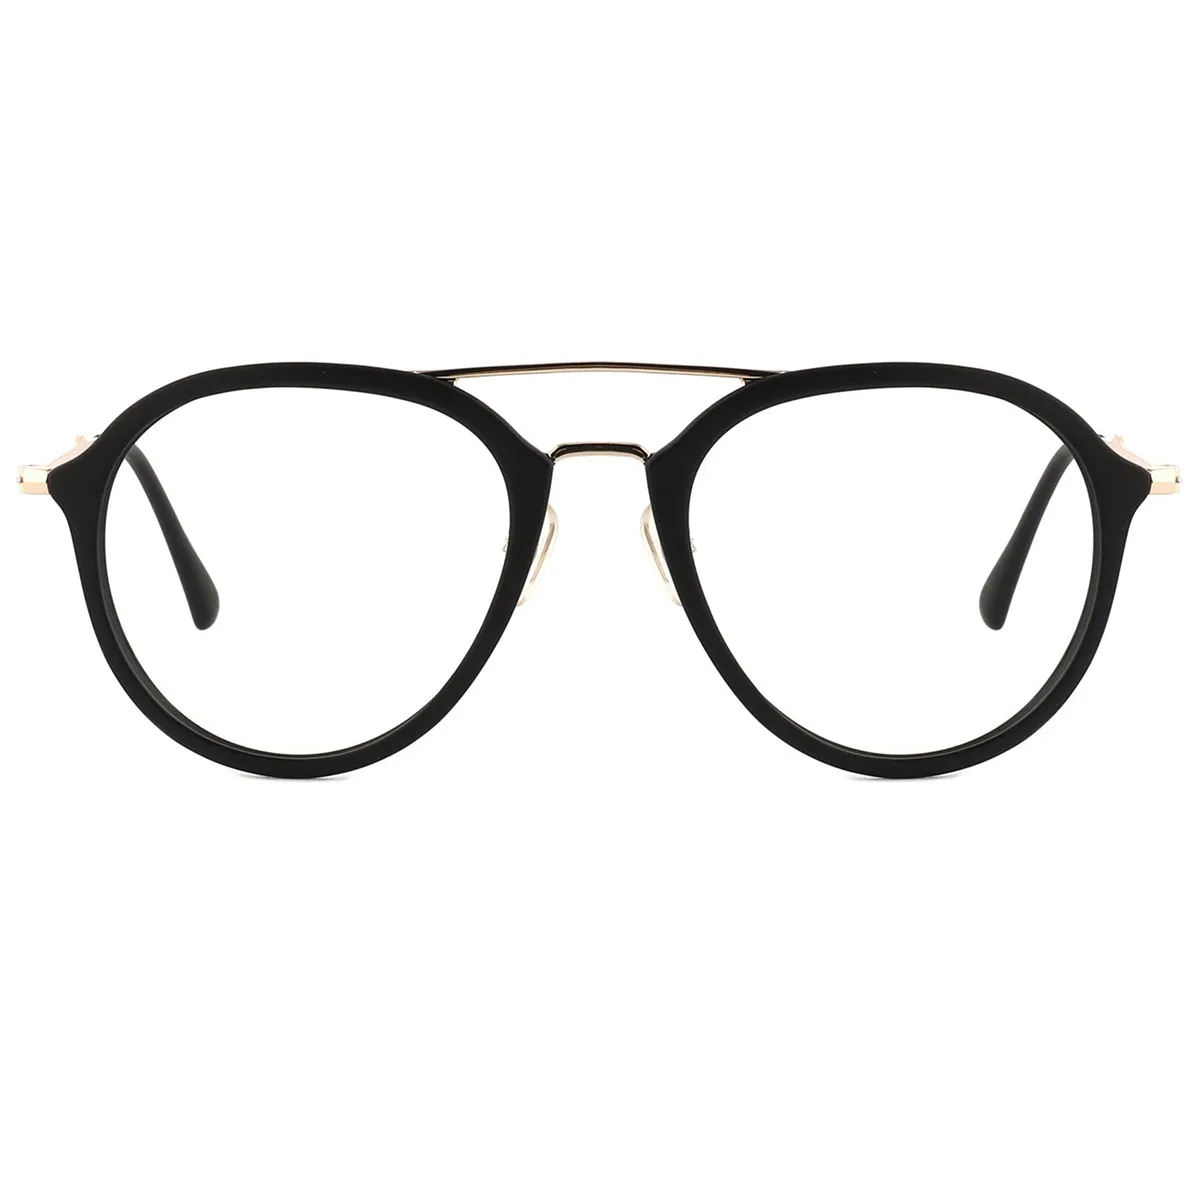 Fashion Aviator Black  Reading Glasses for Women & Men